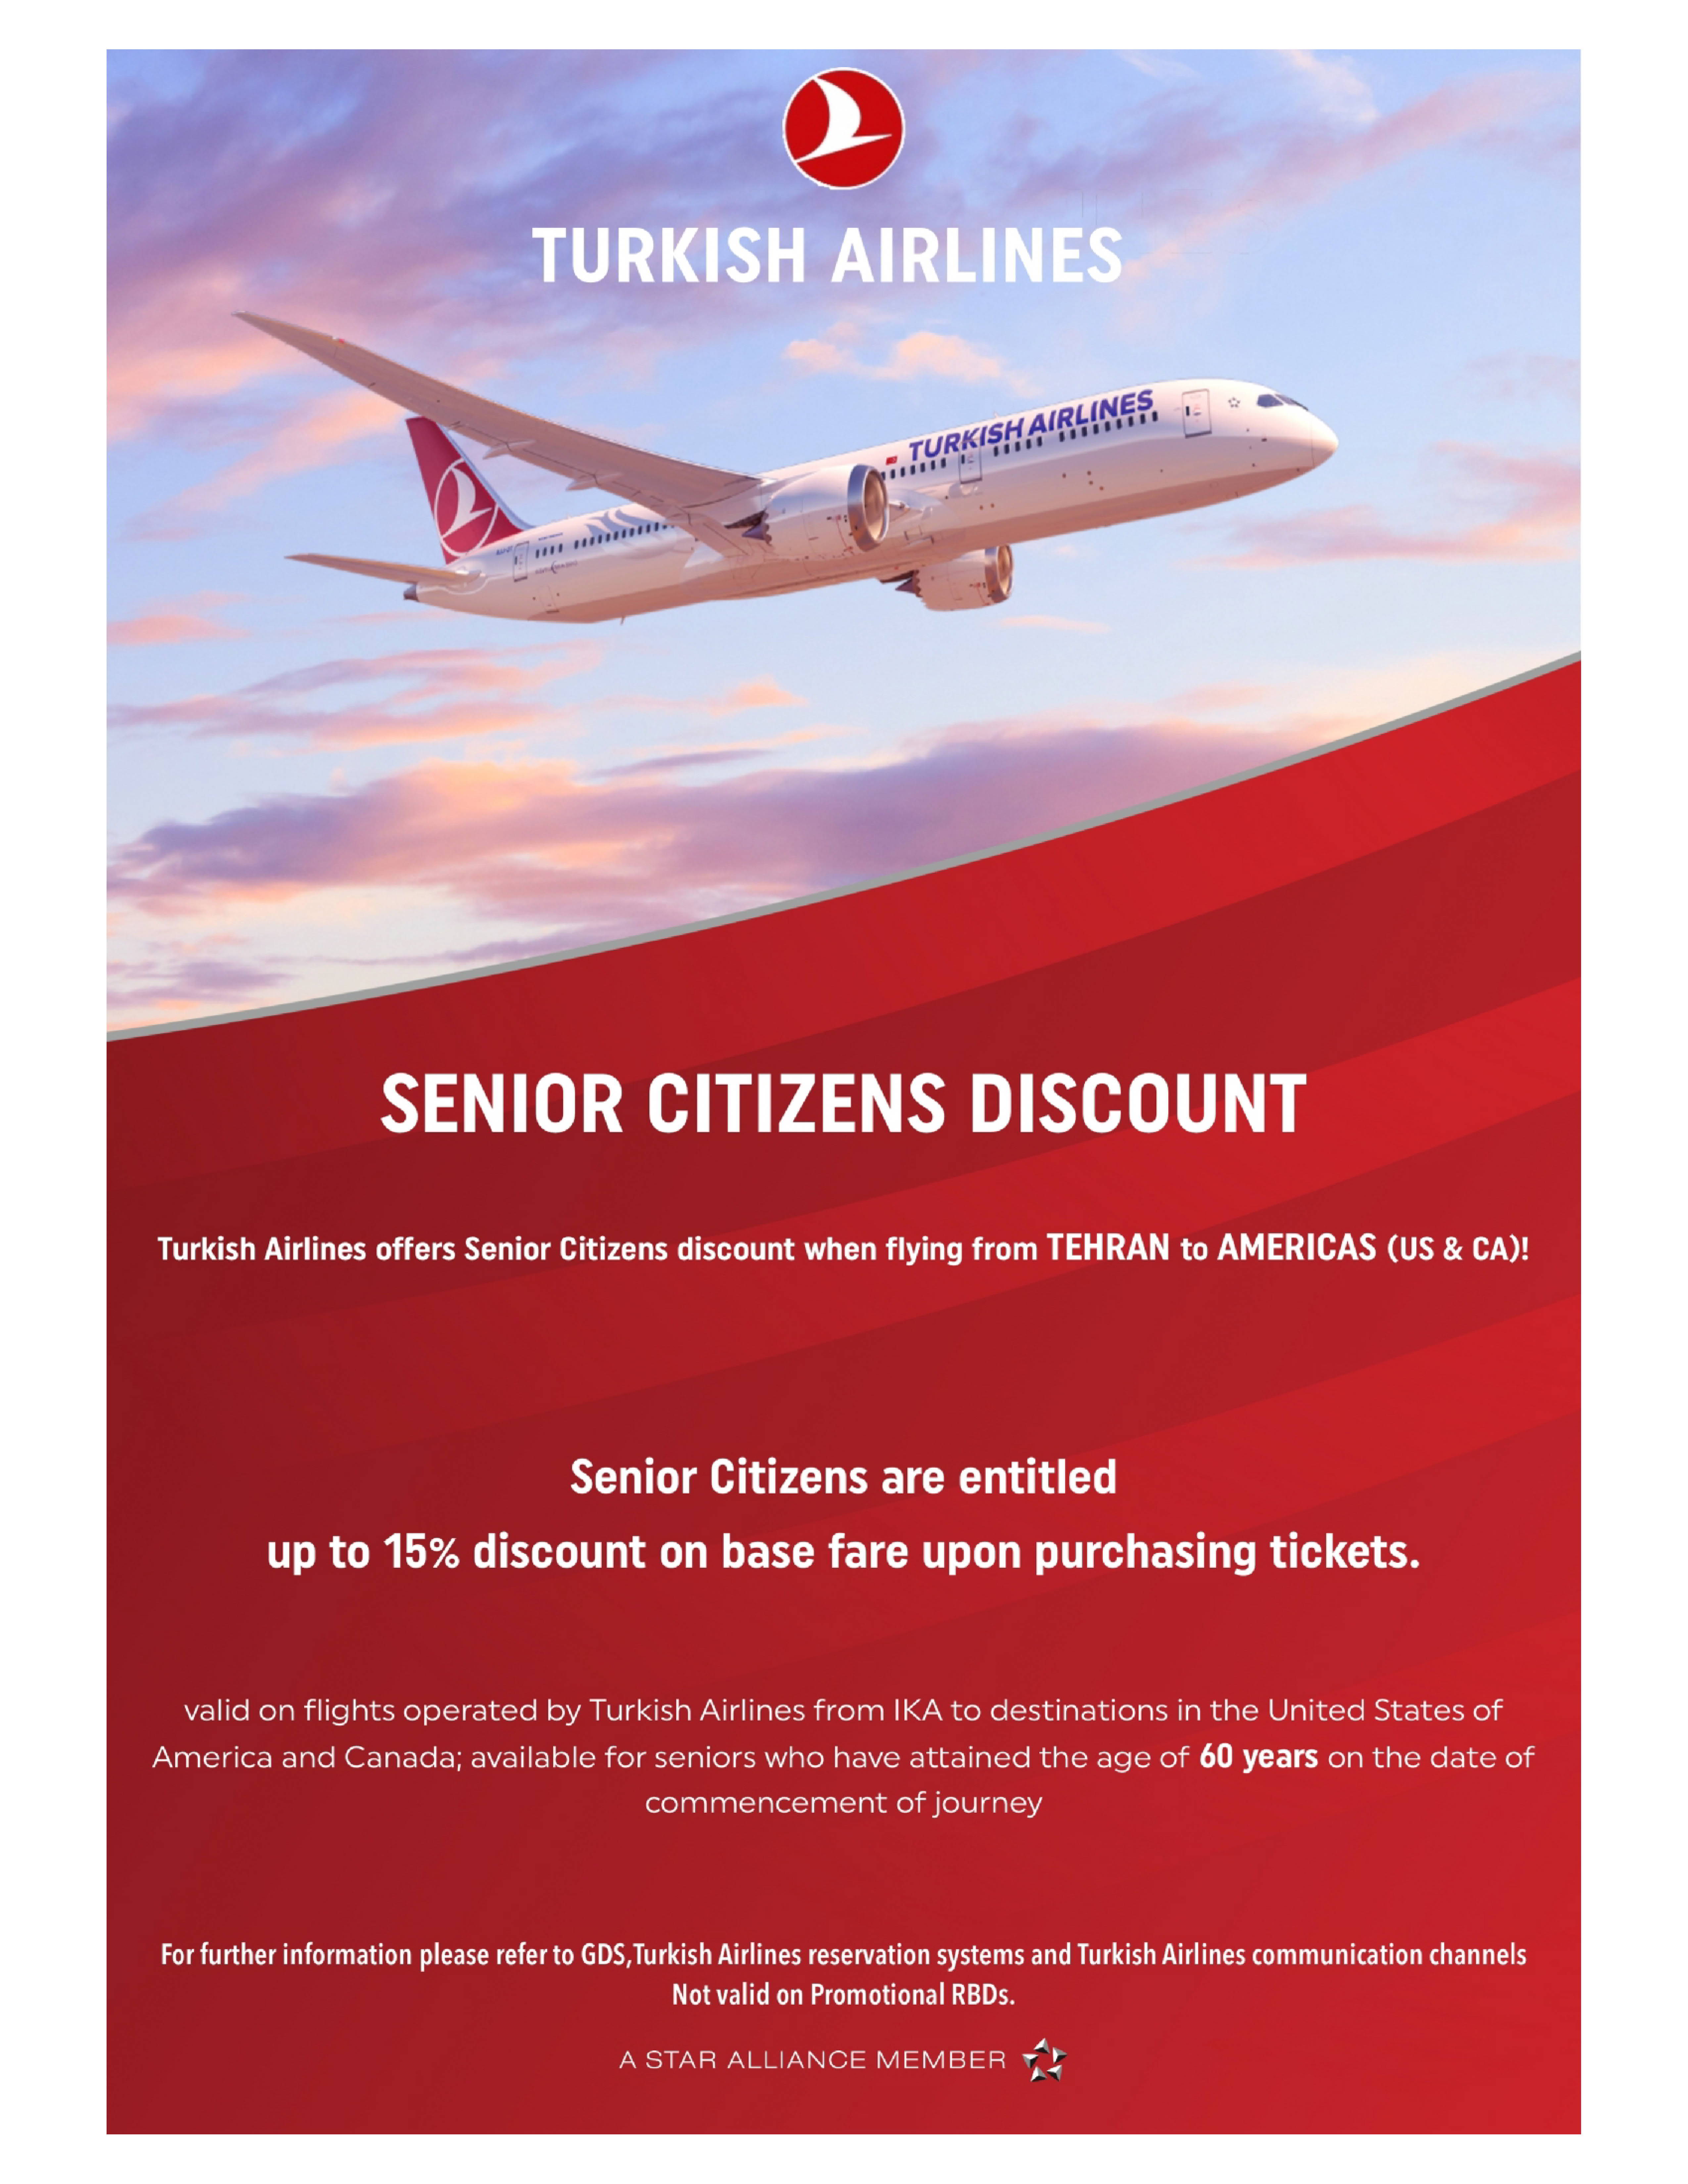 بخشنامه و اطلاعیه   هواپیمایی ترکیش درباره SENIOR CITIZENS DISCOUNT